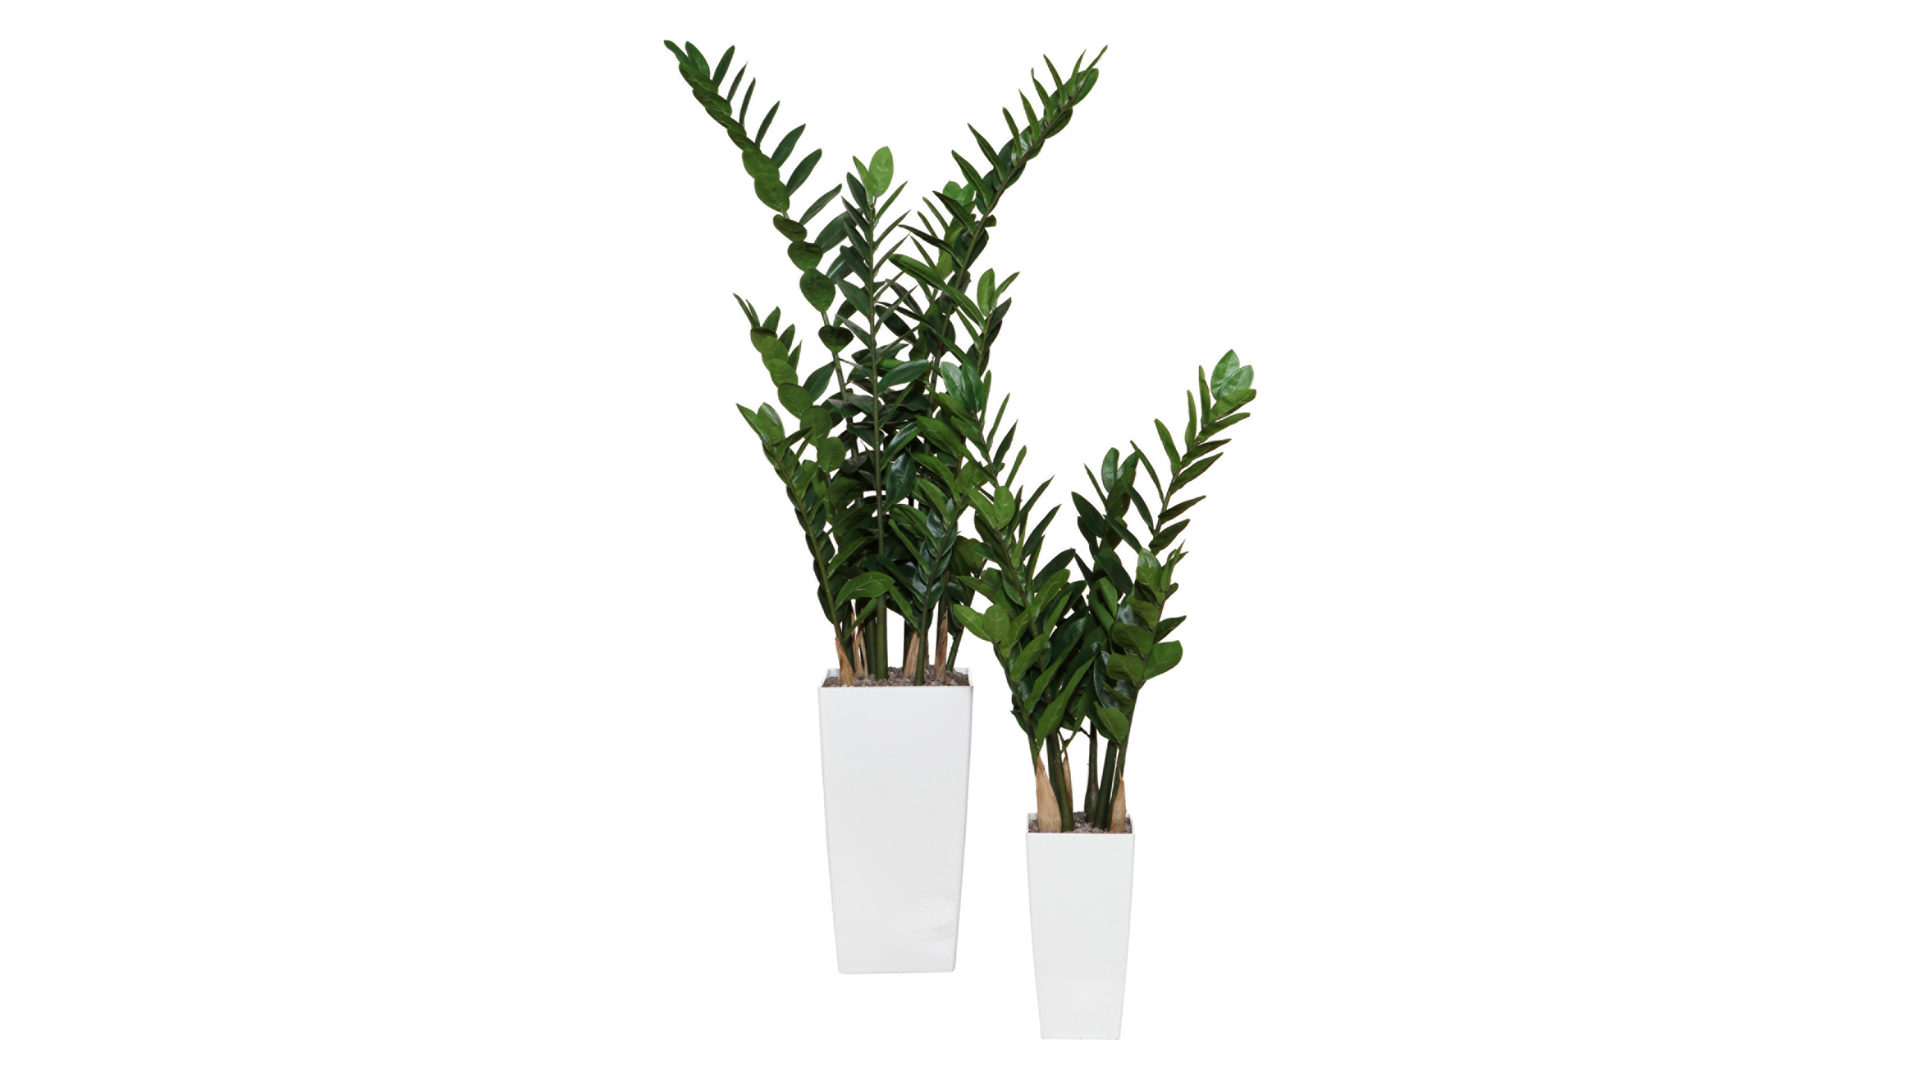 Pflanze Gasper aus Kunststoff in Grün Zamiifolia künstliche Grünpflanze - ca. 70 cm hoch